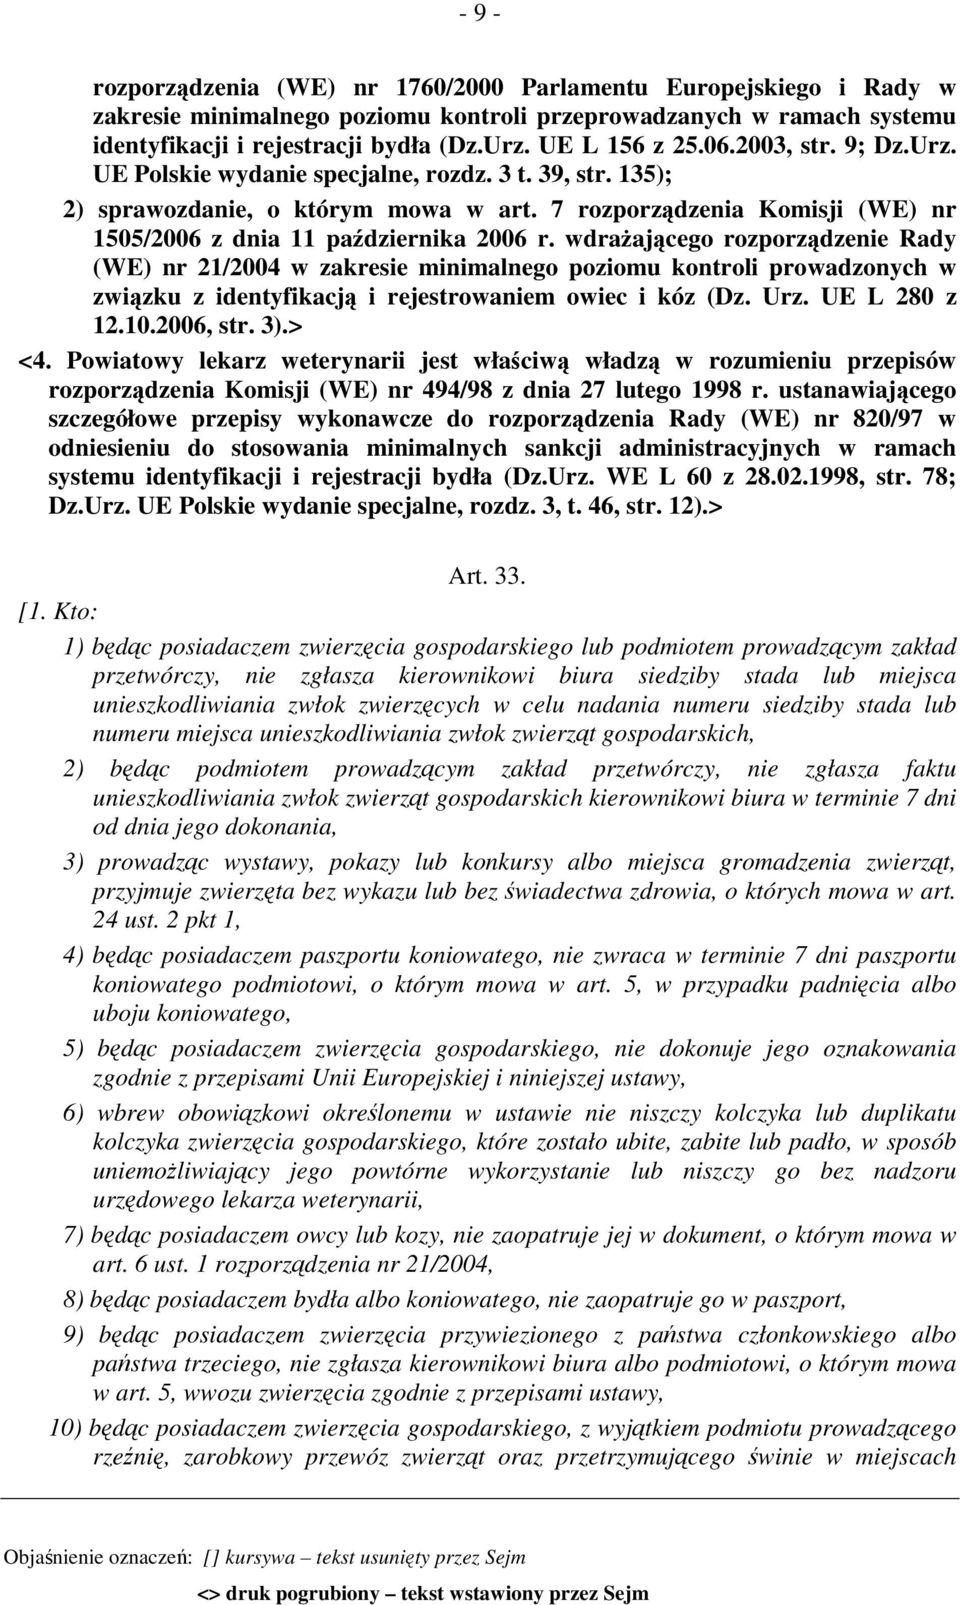 7 rozporządzenia Komisji (WE) nr 1505/2006 z dnia 11 października 2006 r.